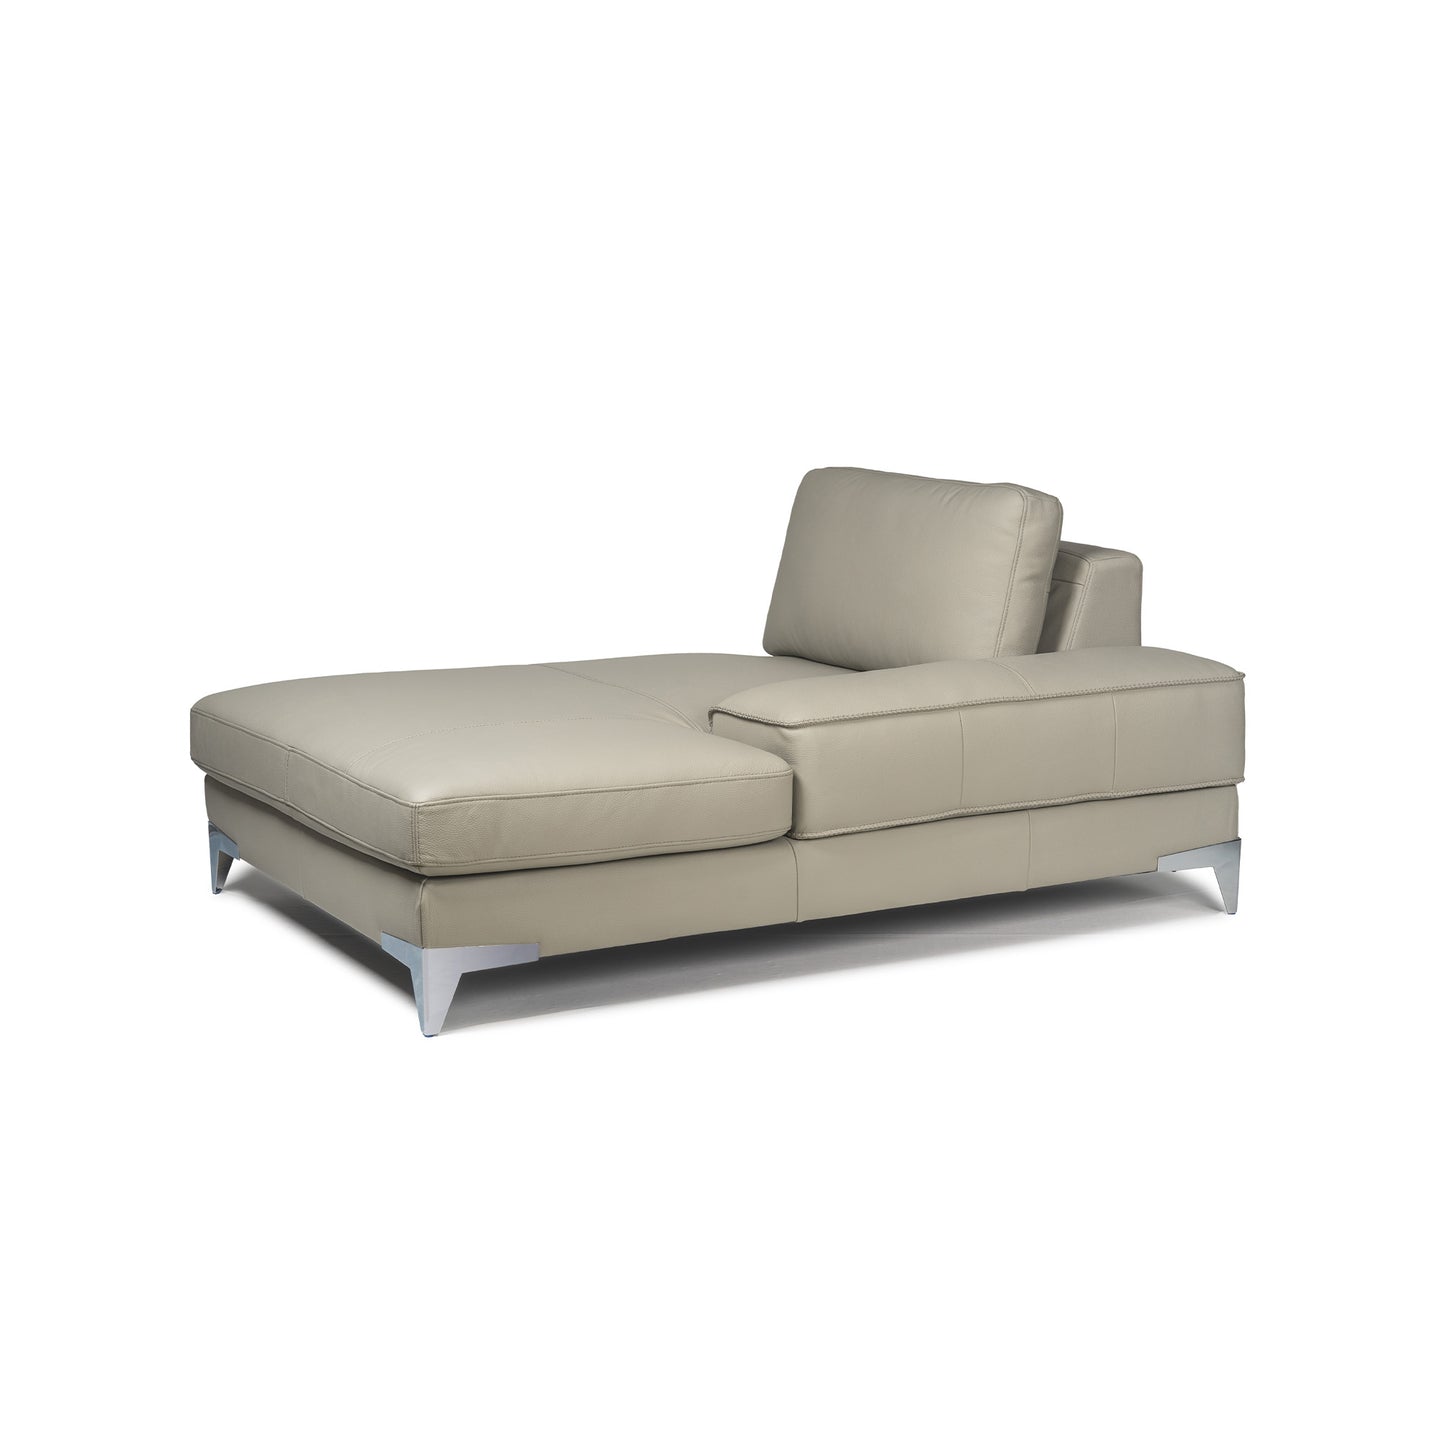 Casper Sectional Sofa - Chaise Module